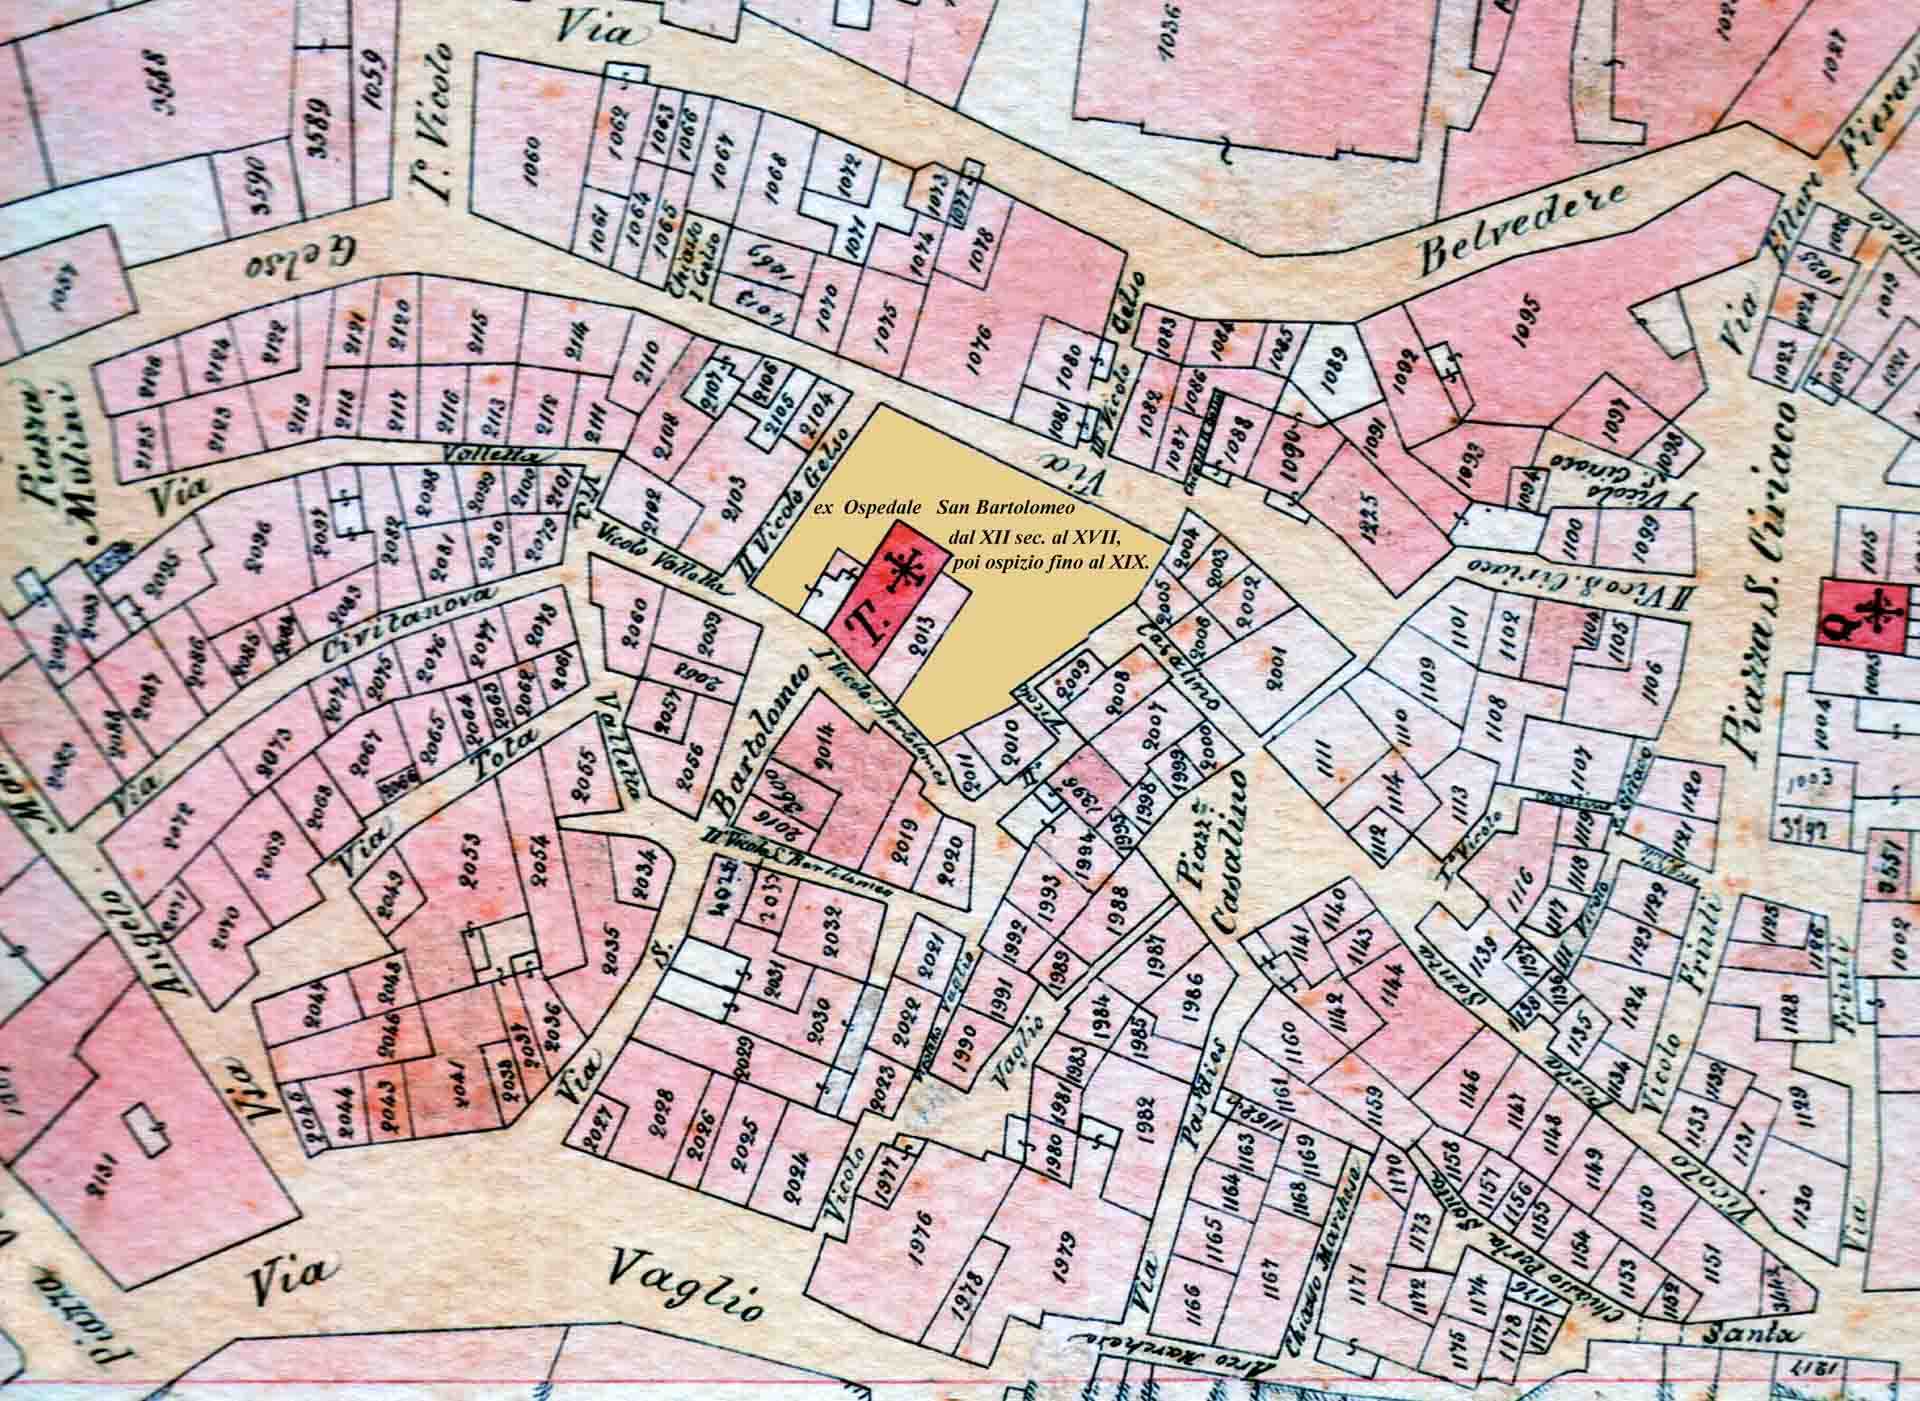 Planimetria del 1875: particolare con Chiesa di S. Bartolomeo